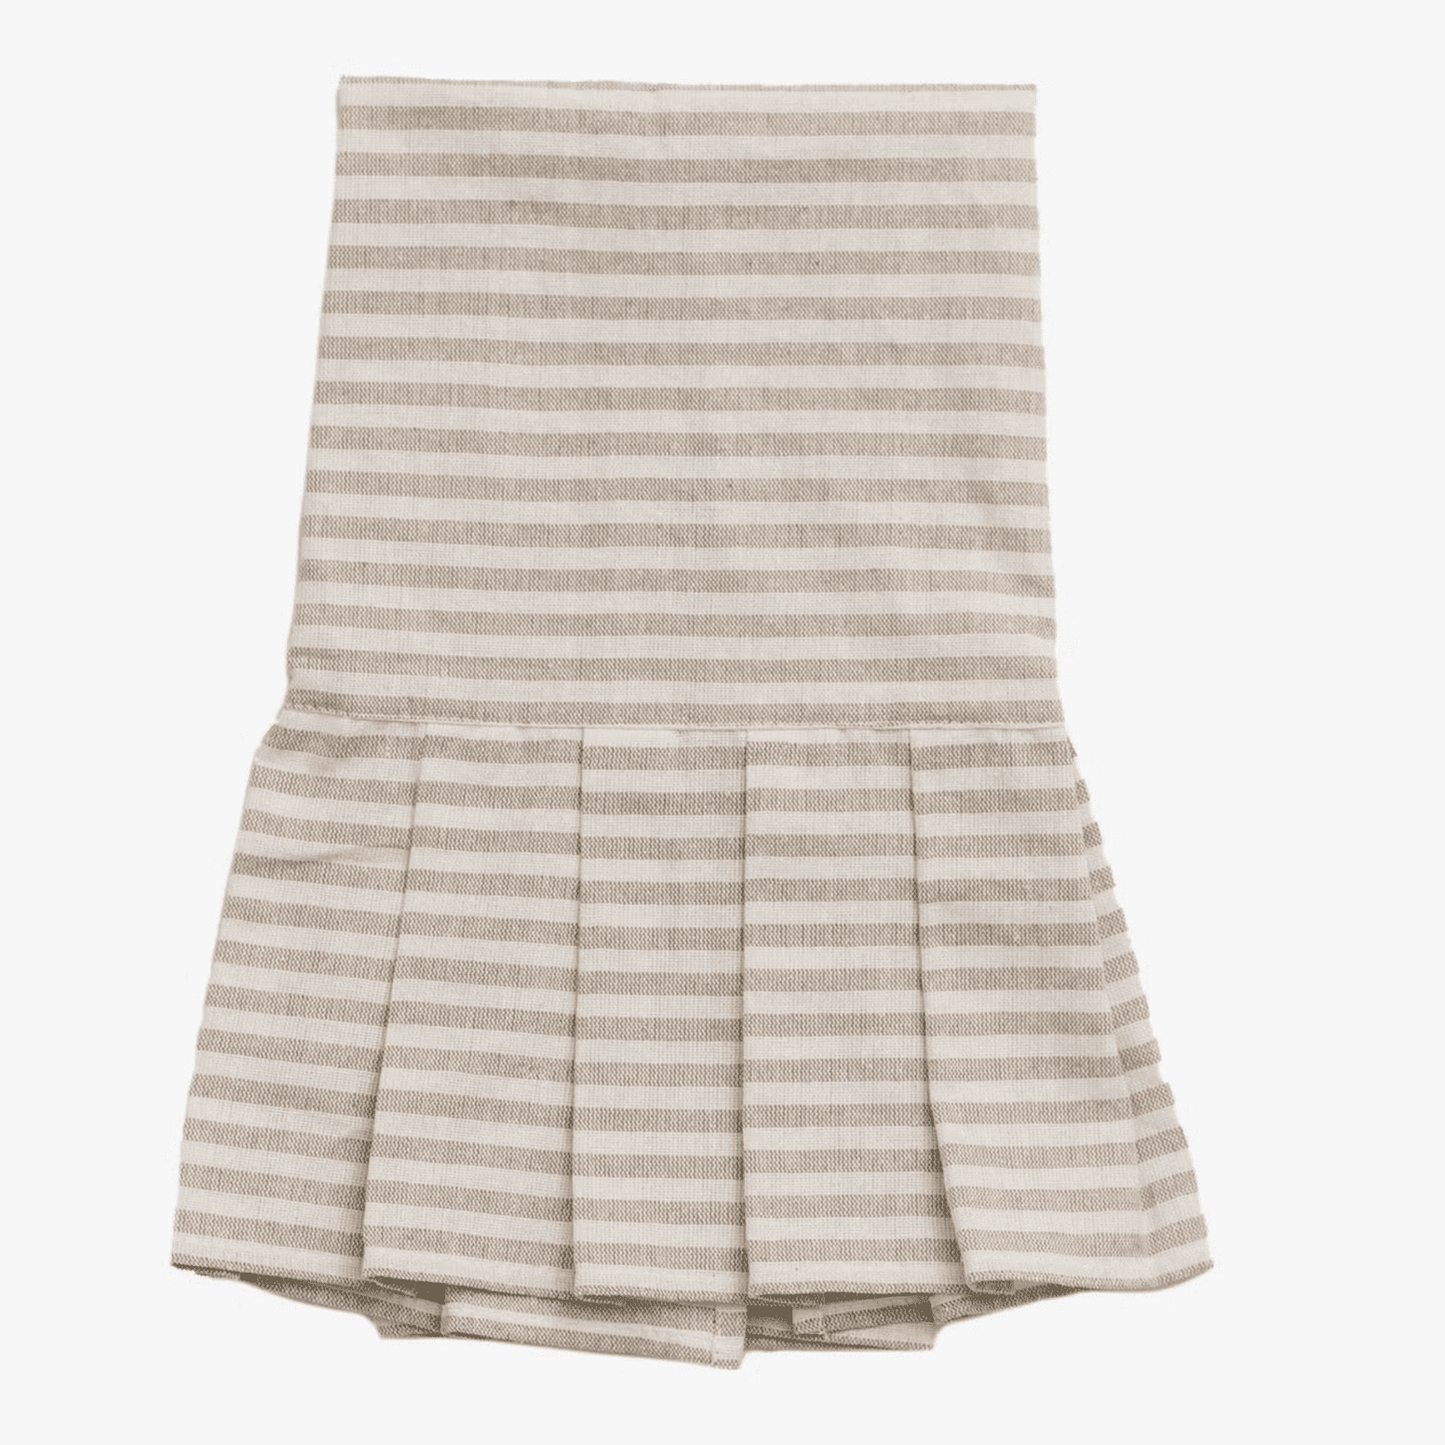 Striped Tea Towel with Ruffle - Tan & Cream